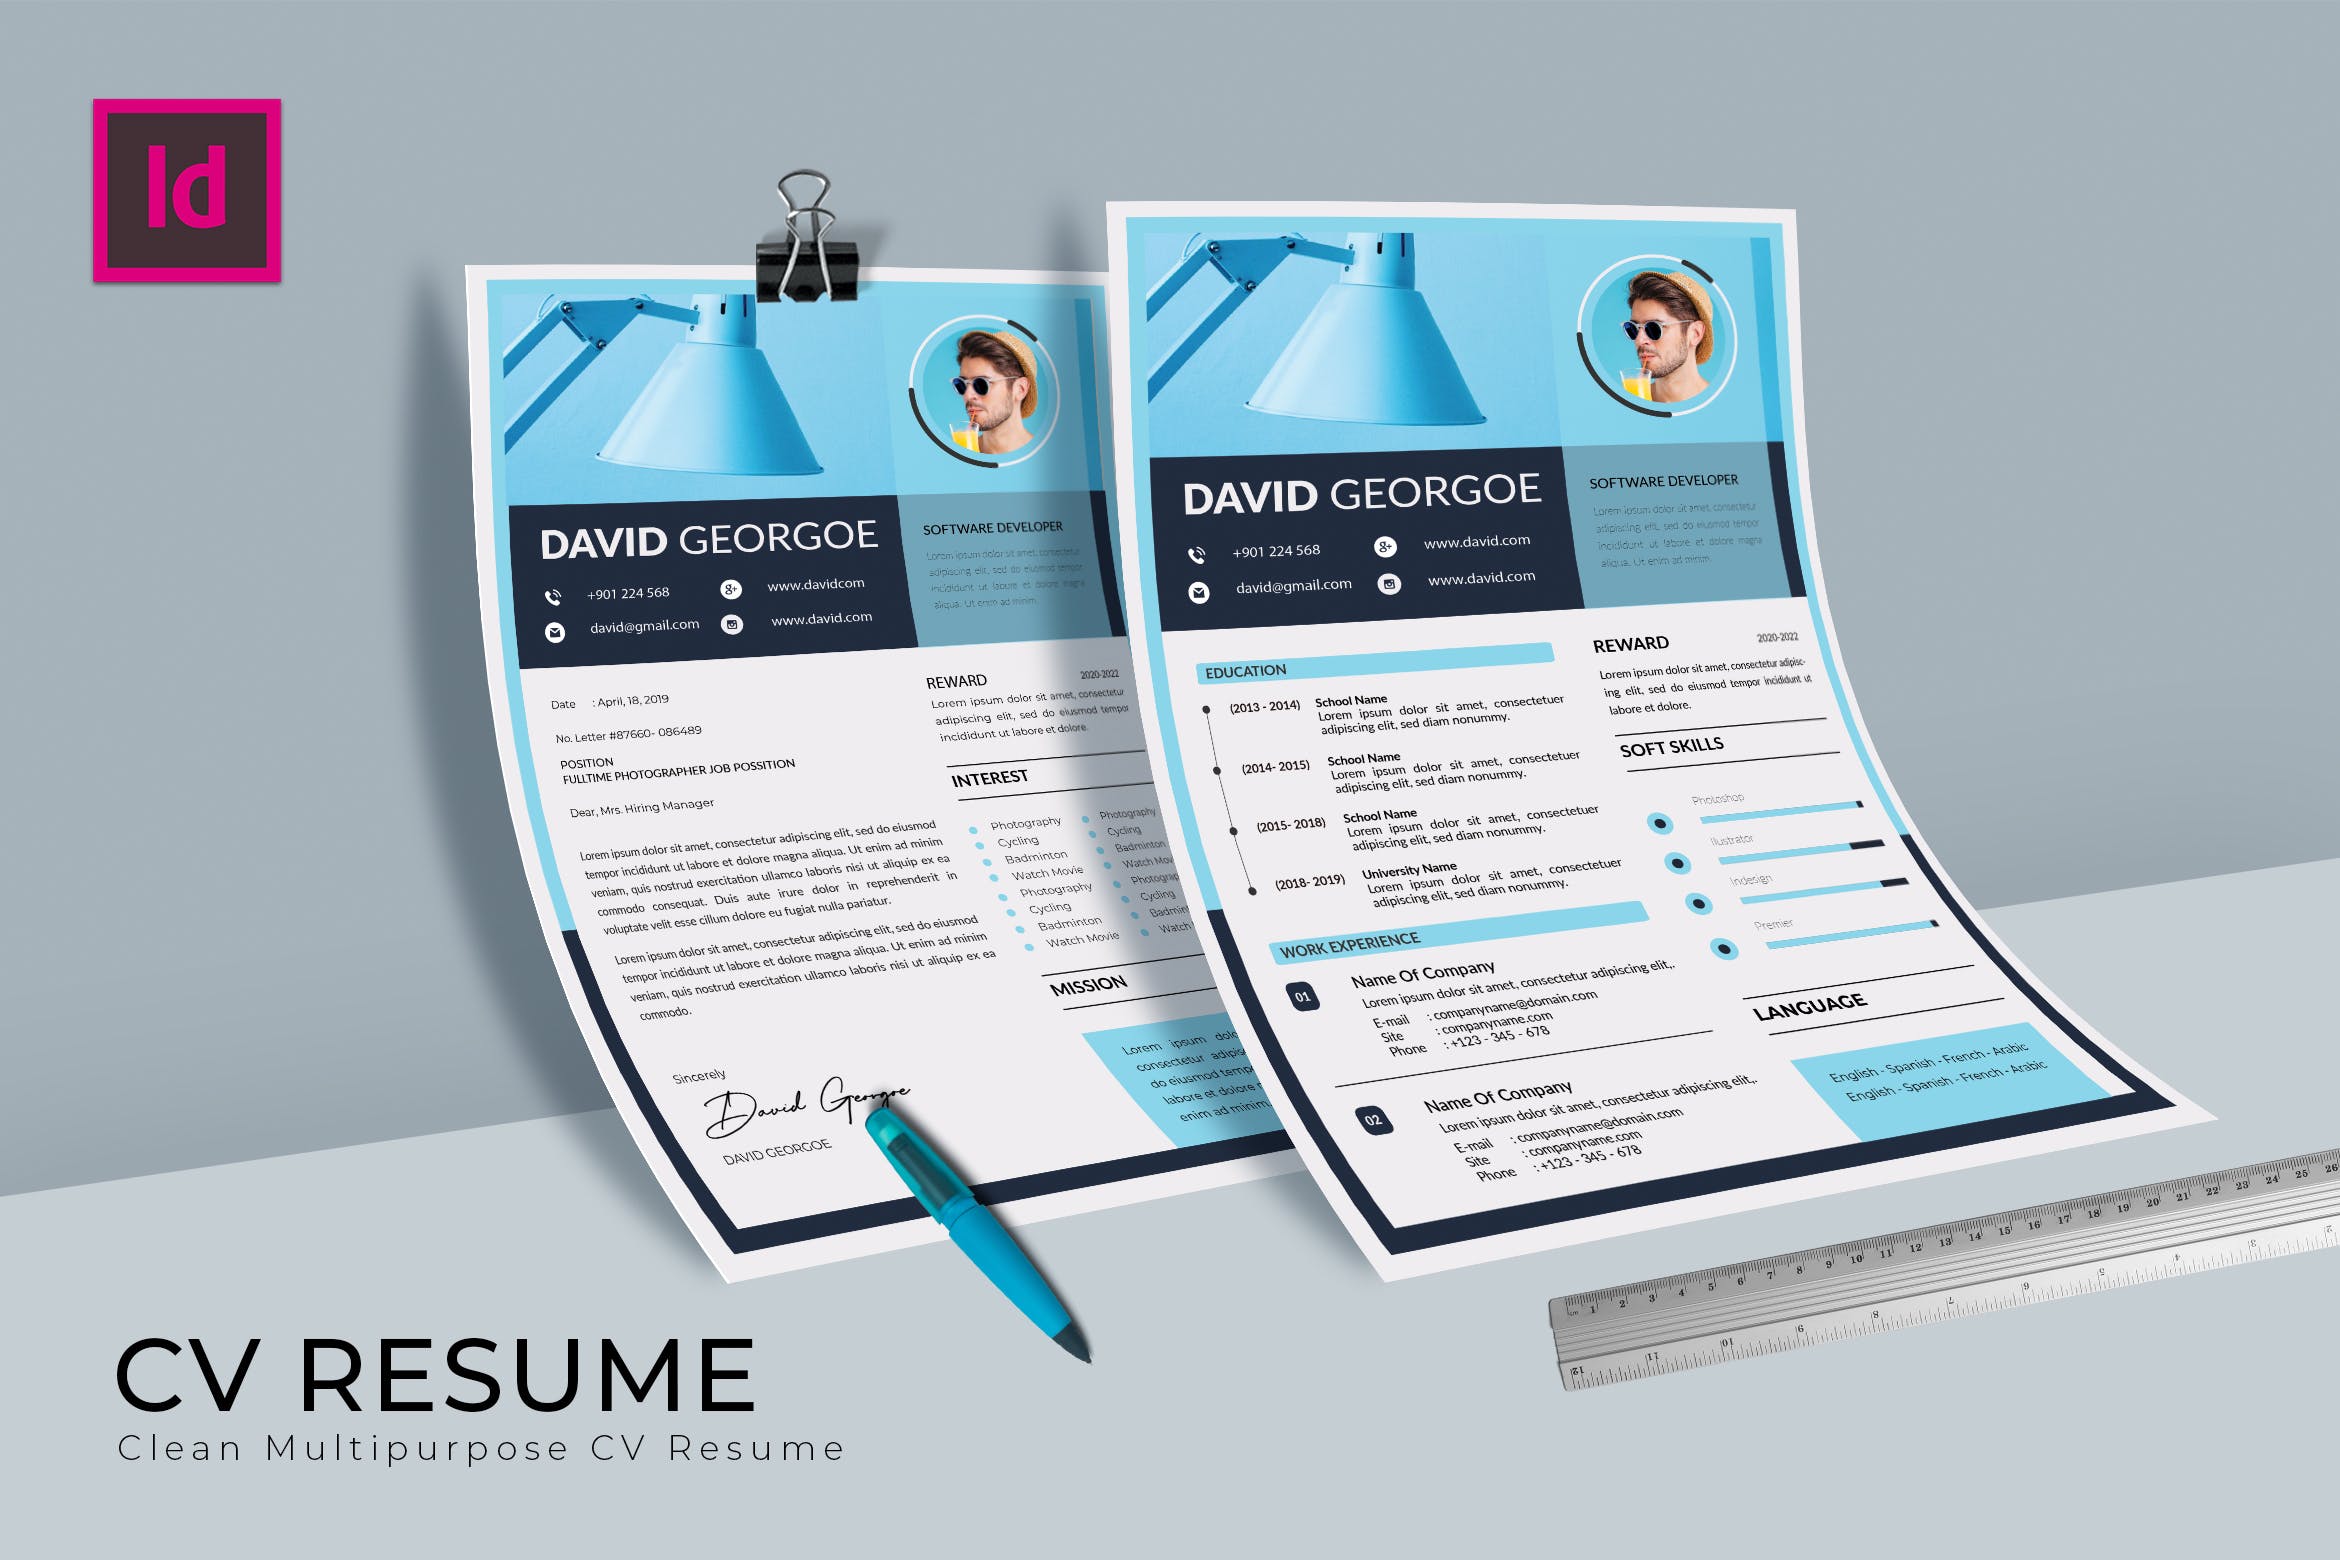 软件开发工程师介绍信&第一素材精选简历模板 Softy Blue CV Resume Template插图